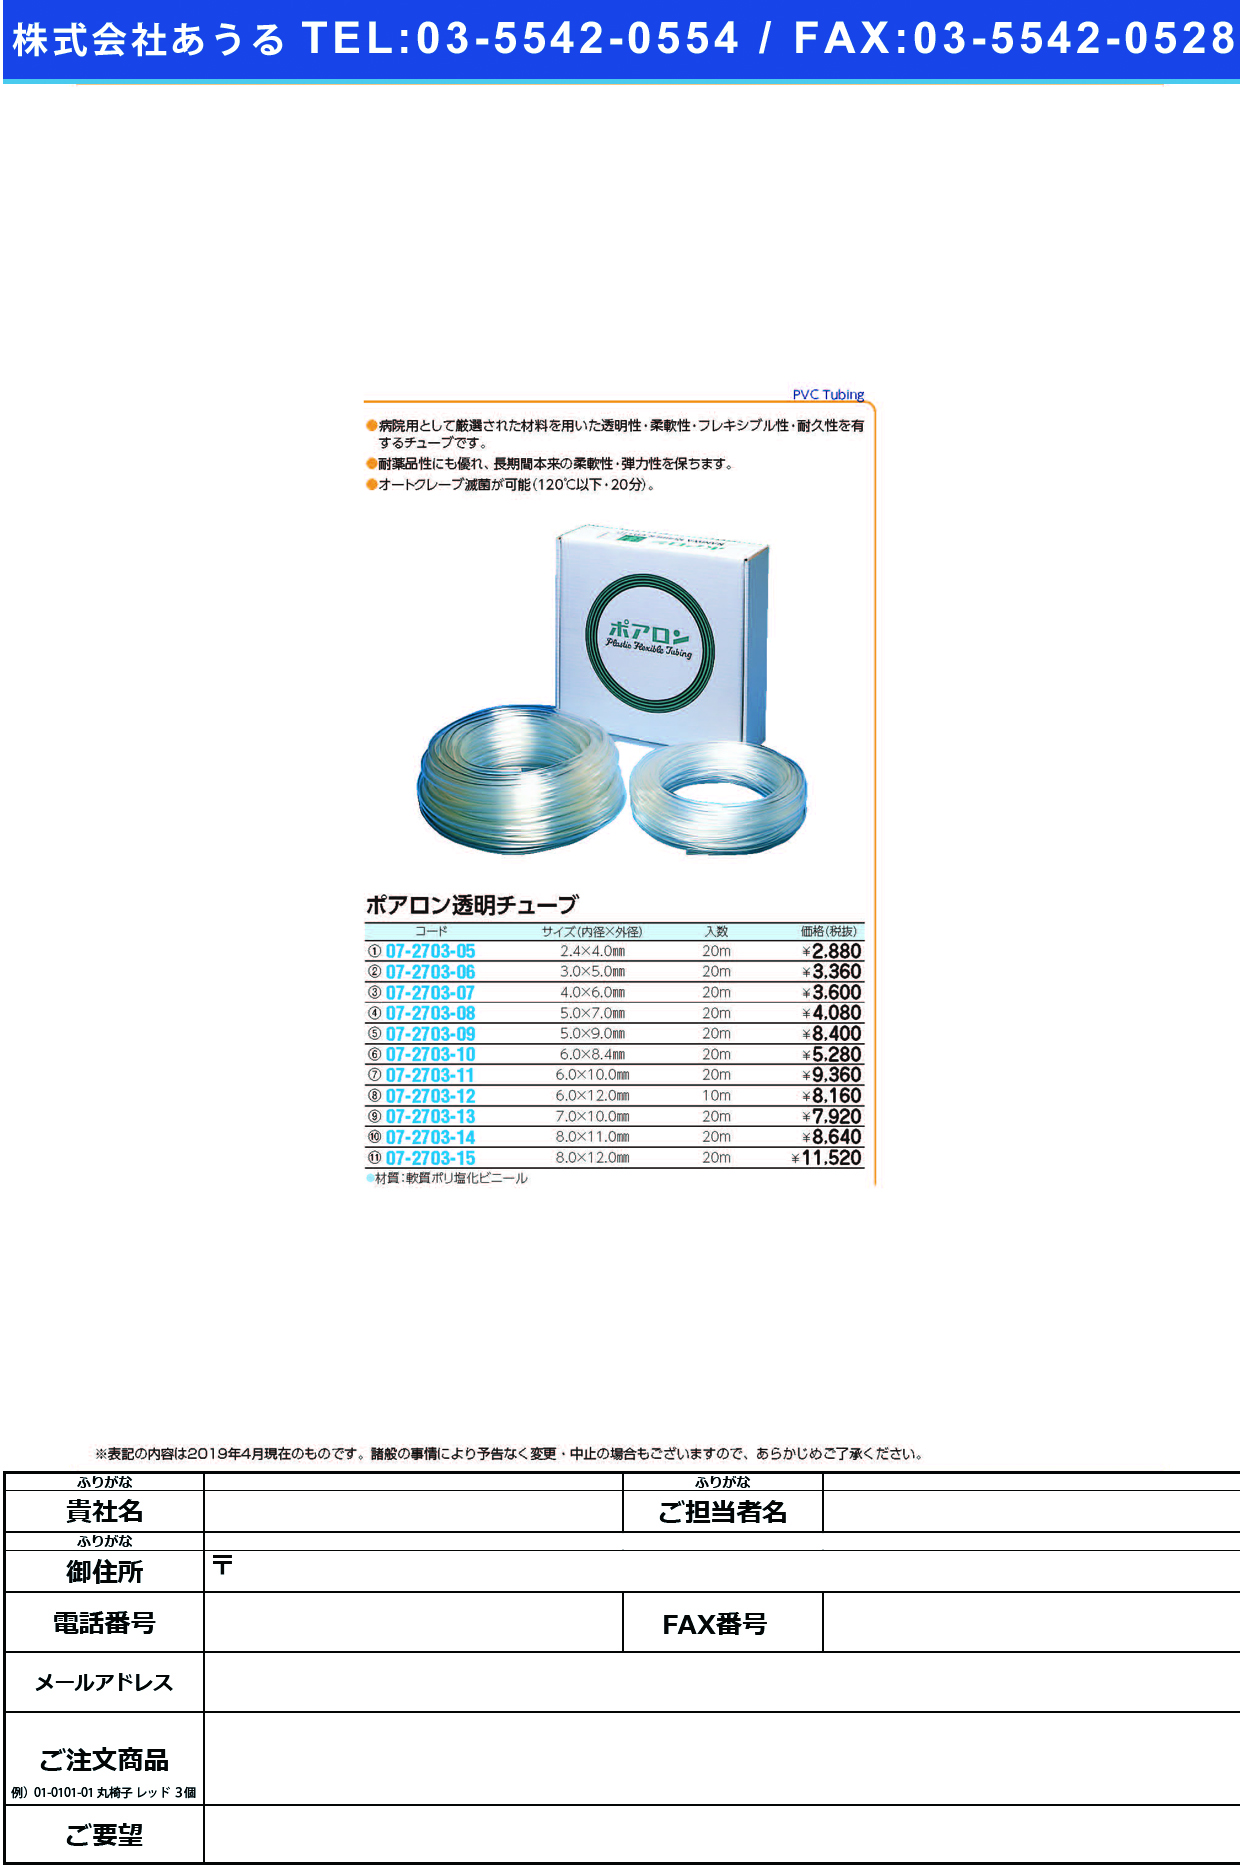 (07-2703-12)ポアロン透明チューブ 6X12MM(10Mｲﾘ) ﾎﾟｱﾛﾝﾄｳﾒｲﾁｭｰﾌﾞ【1箱単位】【2019年カタログ商品】